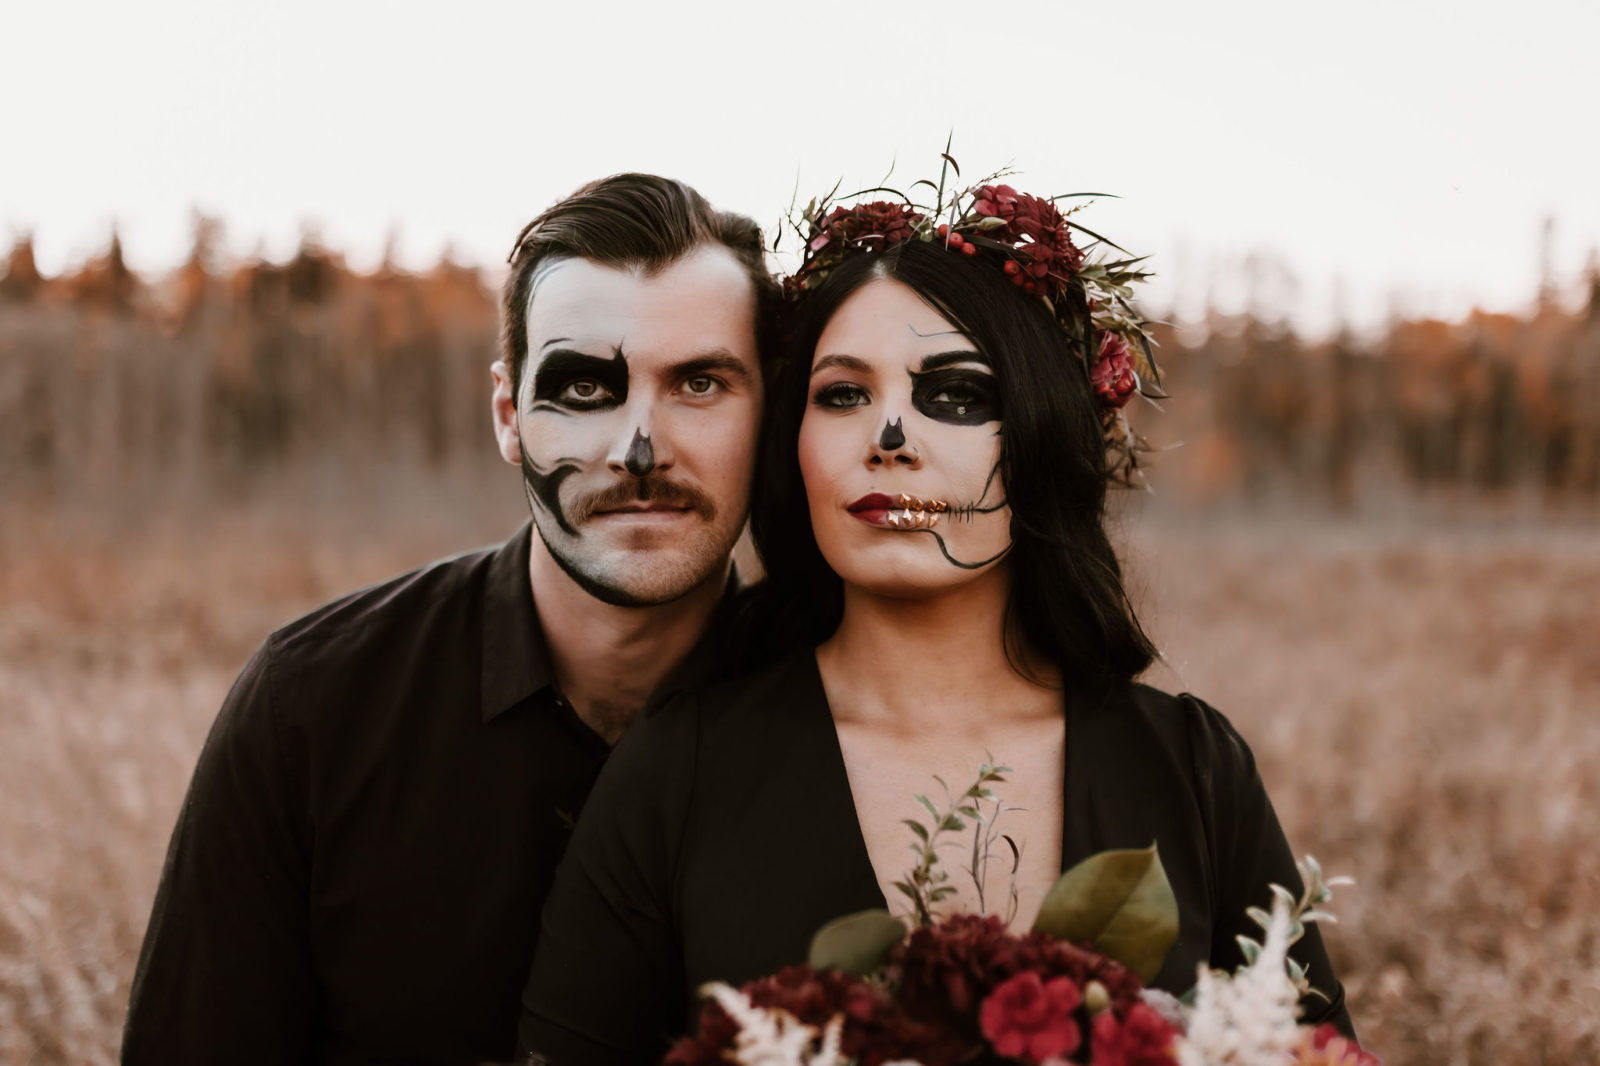 skull makeup, halloween makeup inspiration, Skull Couple Halloween Inspiration, Moody Halloween Photography, moody wedding inspiration, halloween wedding inspiration, Halloween costume